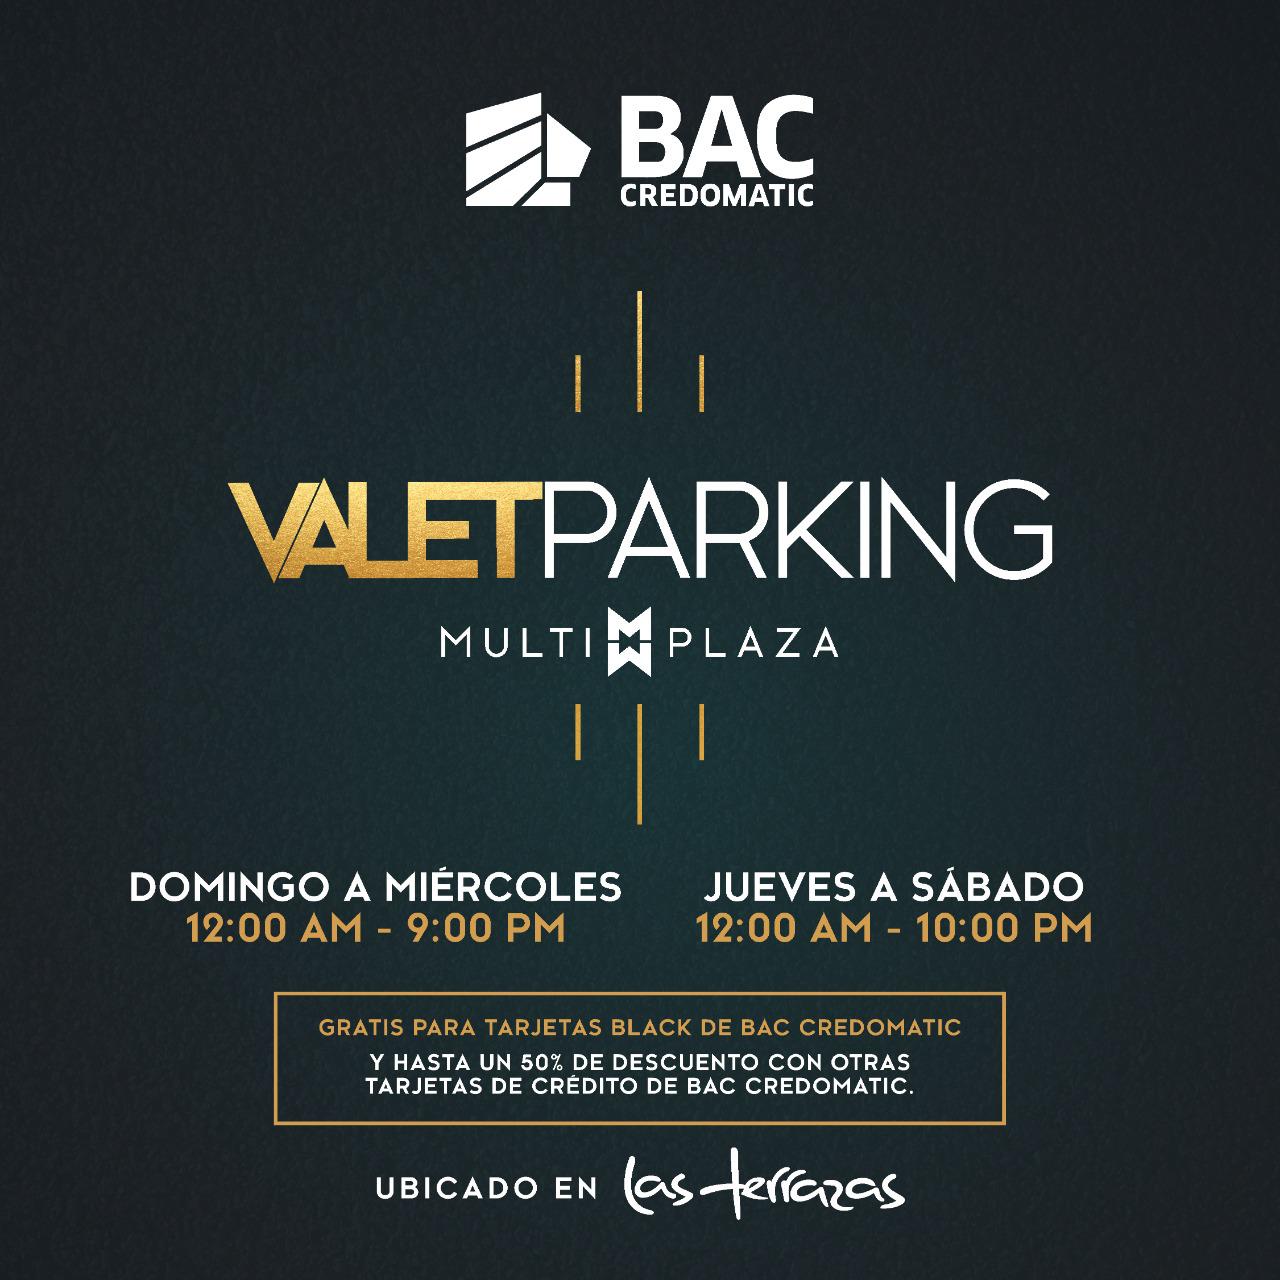 $!Multiplaza y BAC Credomatic presentan novedoso servicio de Valet Parking